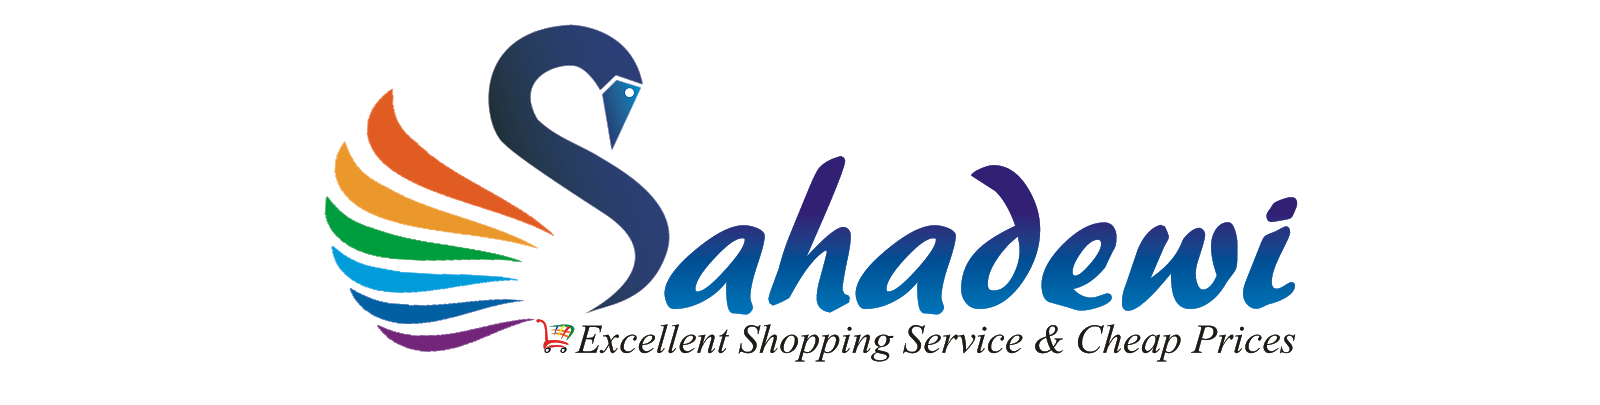 Sahadewi.com